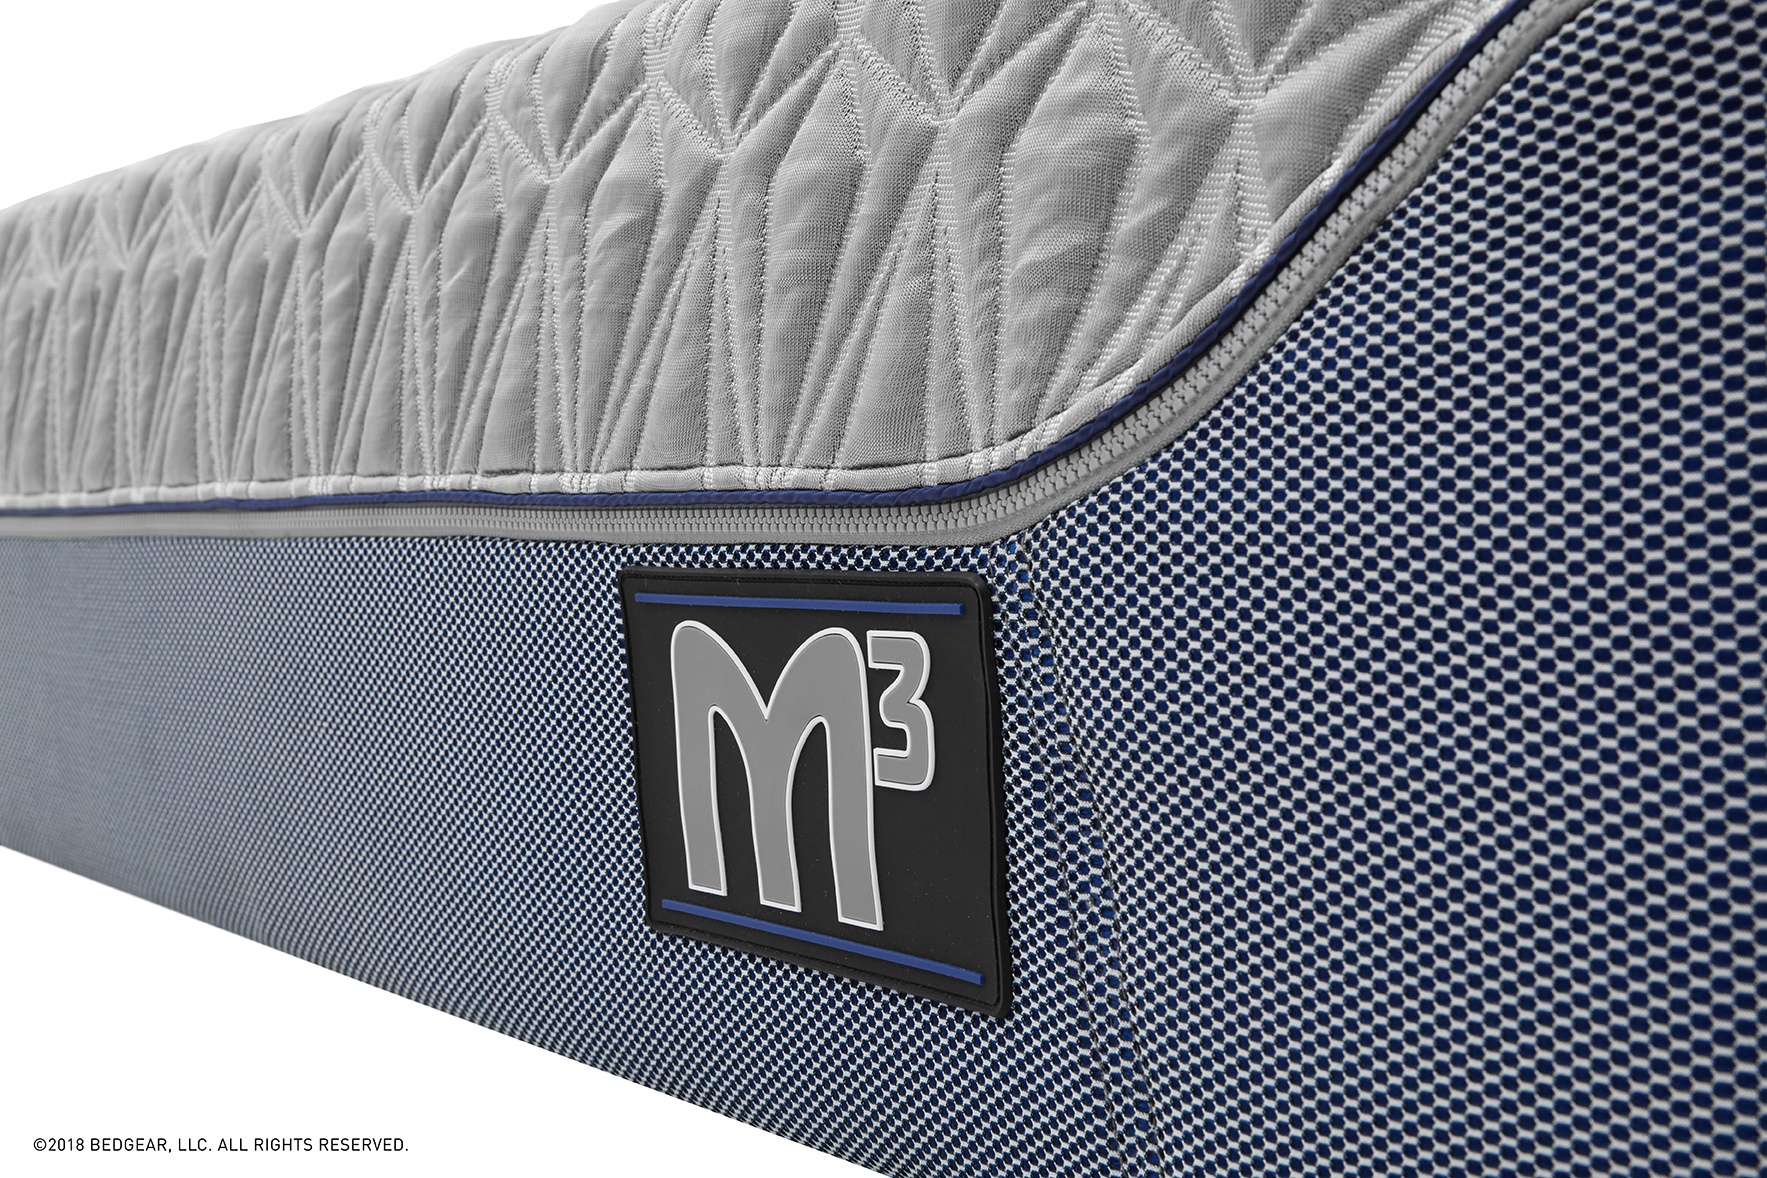 m3 elite king mattress